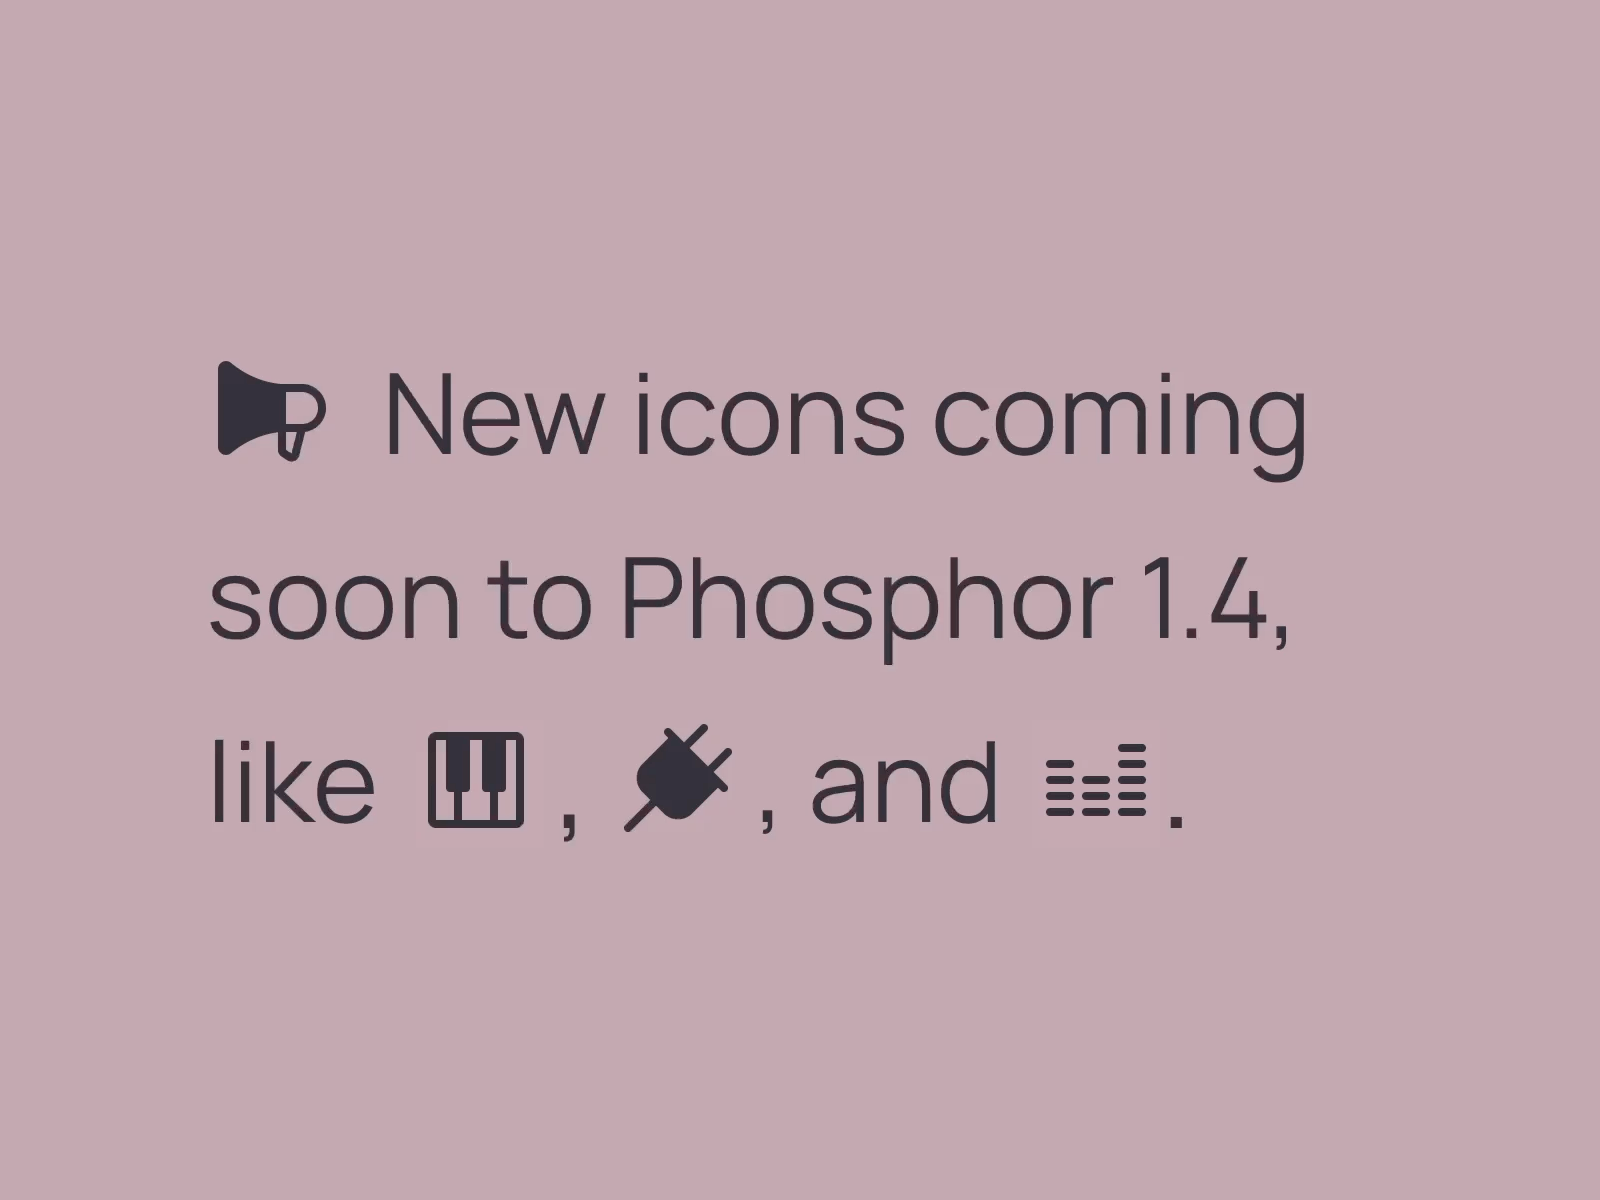 Phosphor 1.4 Sneak Peek